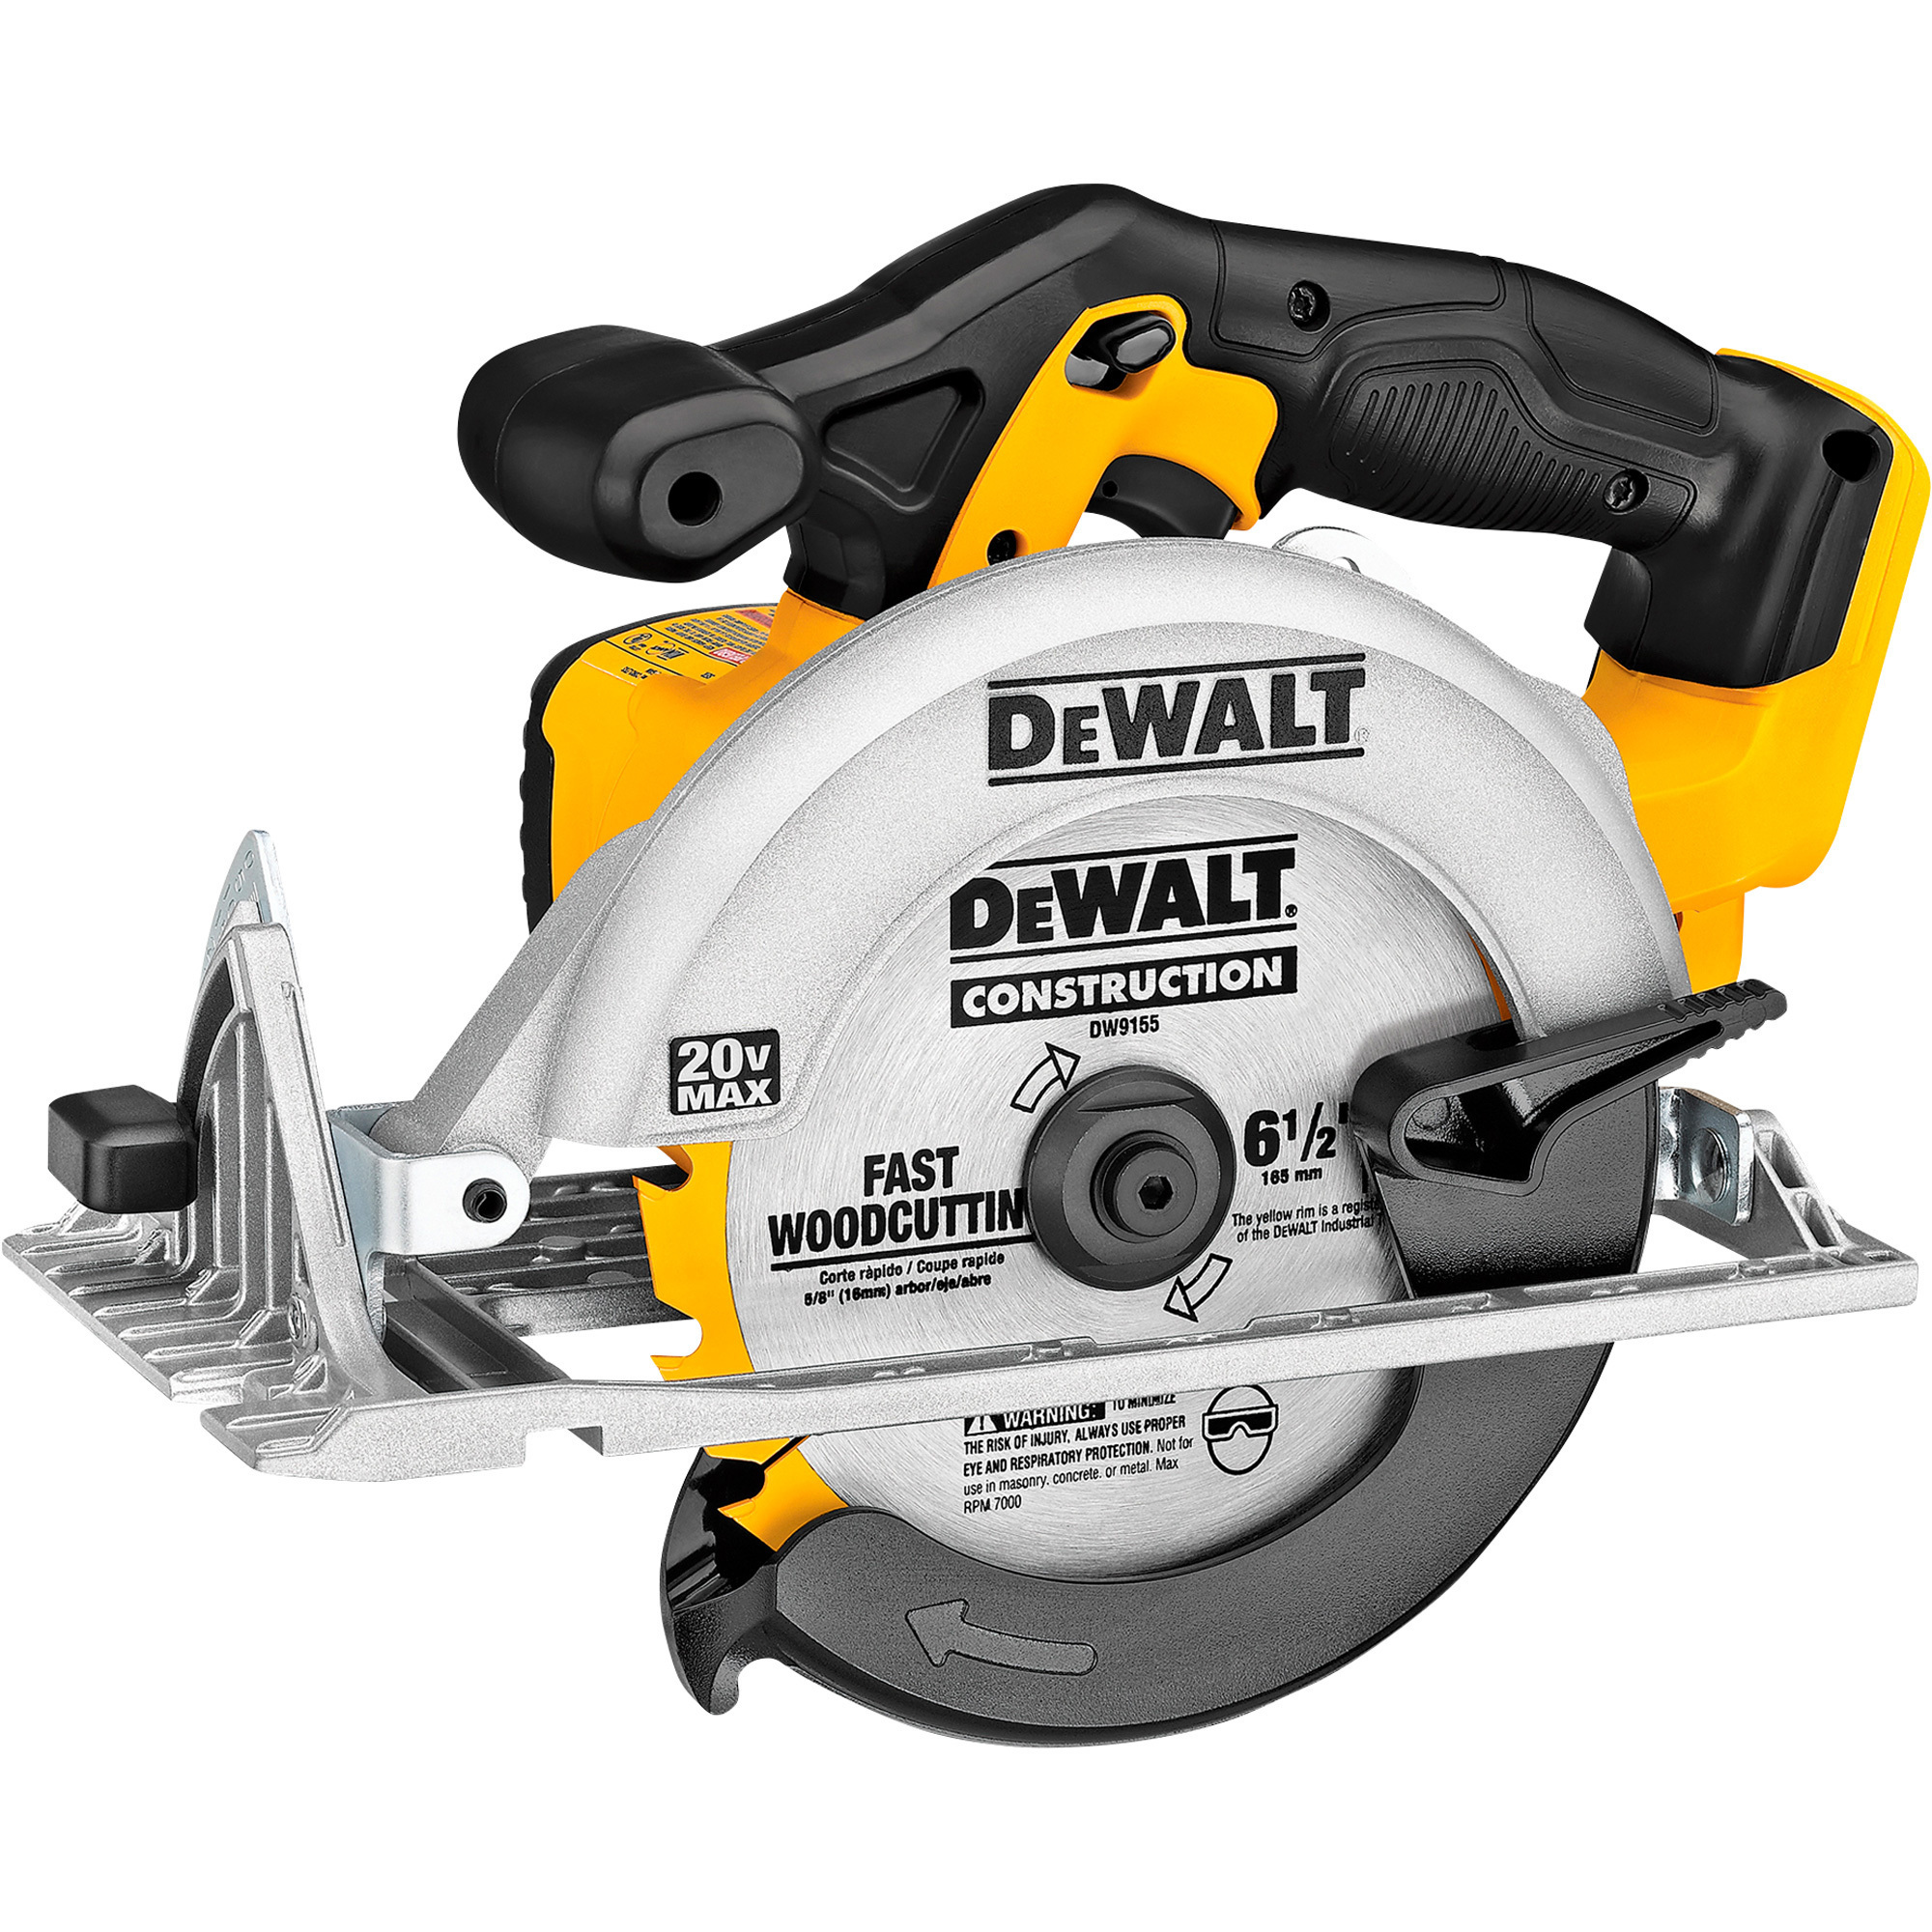 DEWALT 20 Volt Cordless Circular Saw, Tool Only, 6 1/2Inch, Model DCS391B